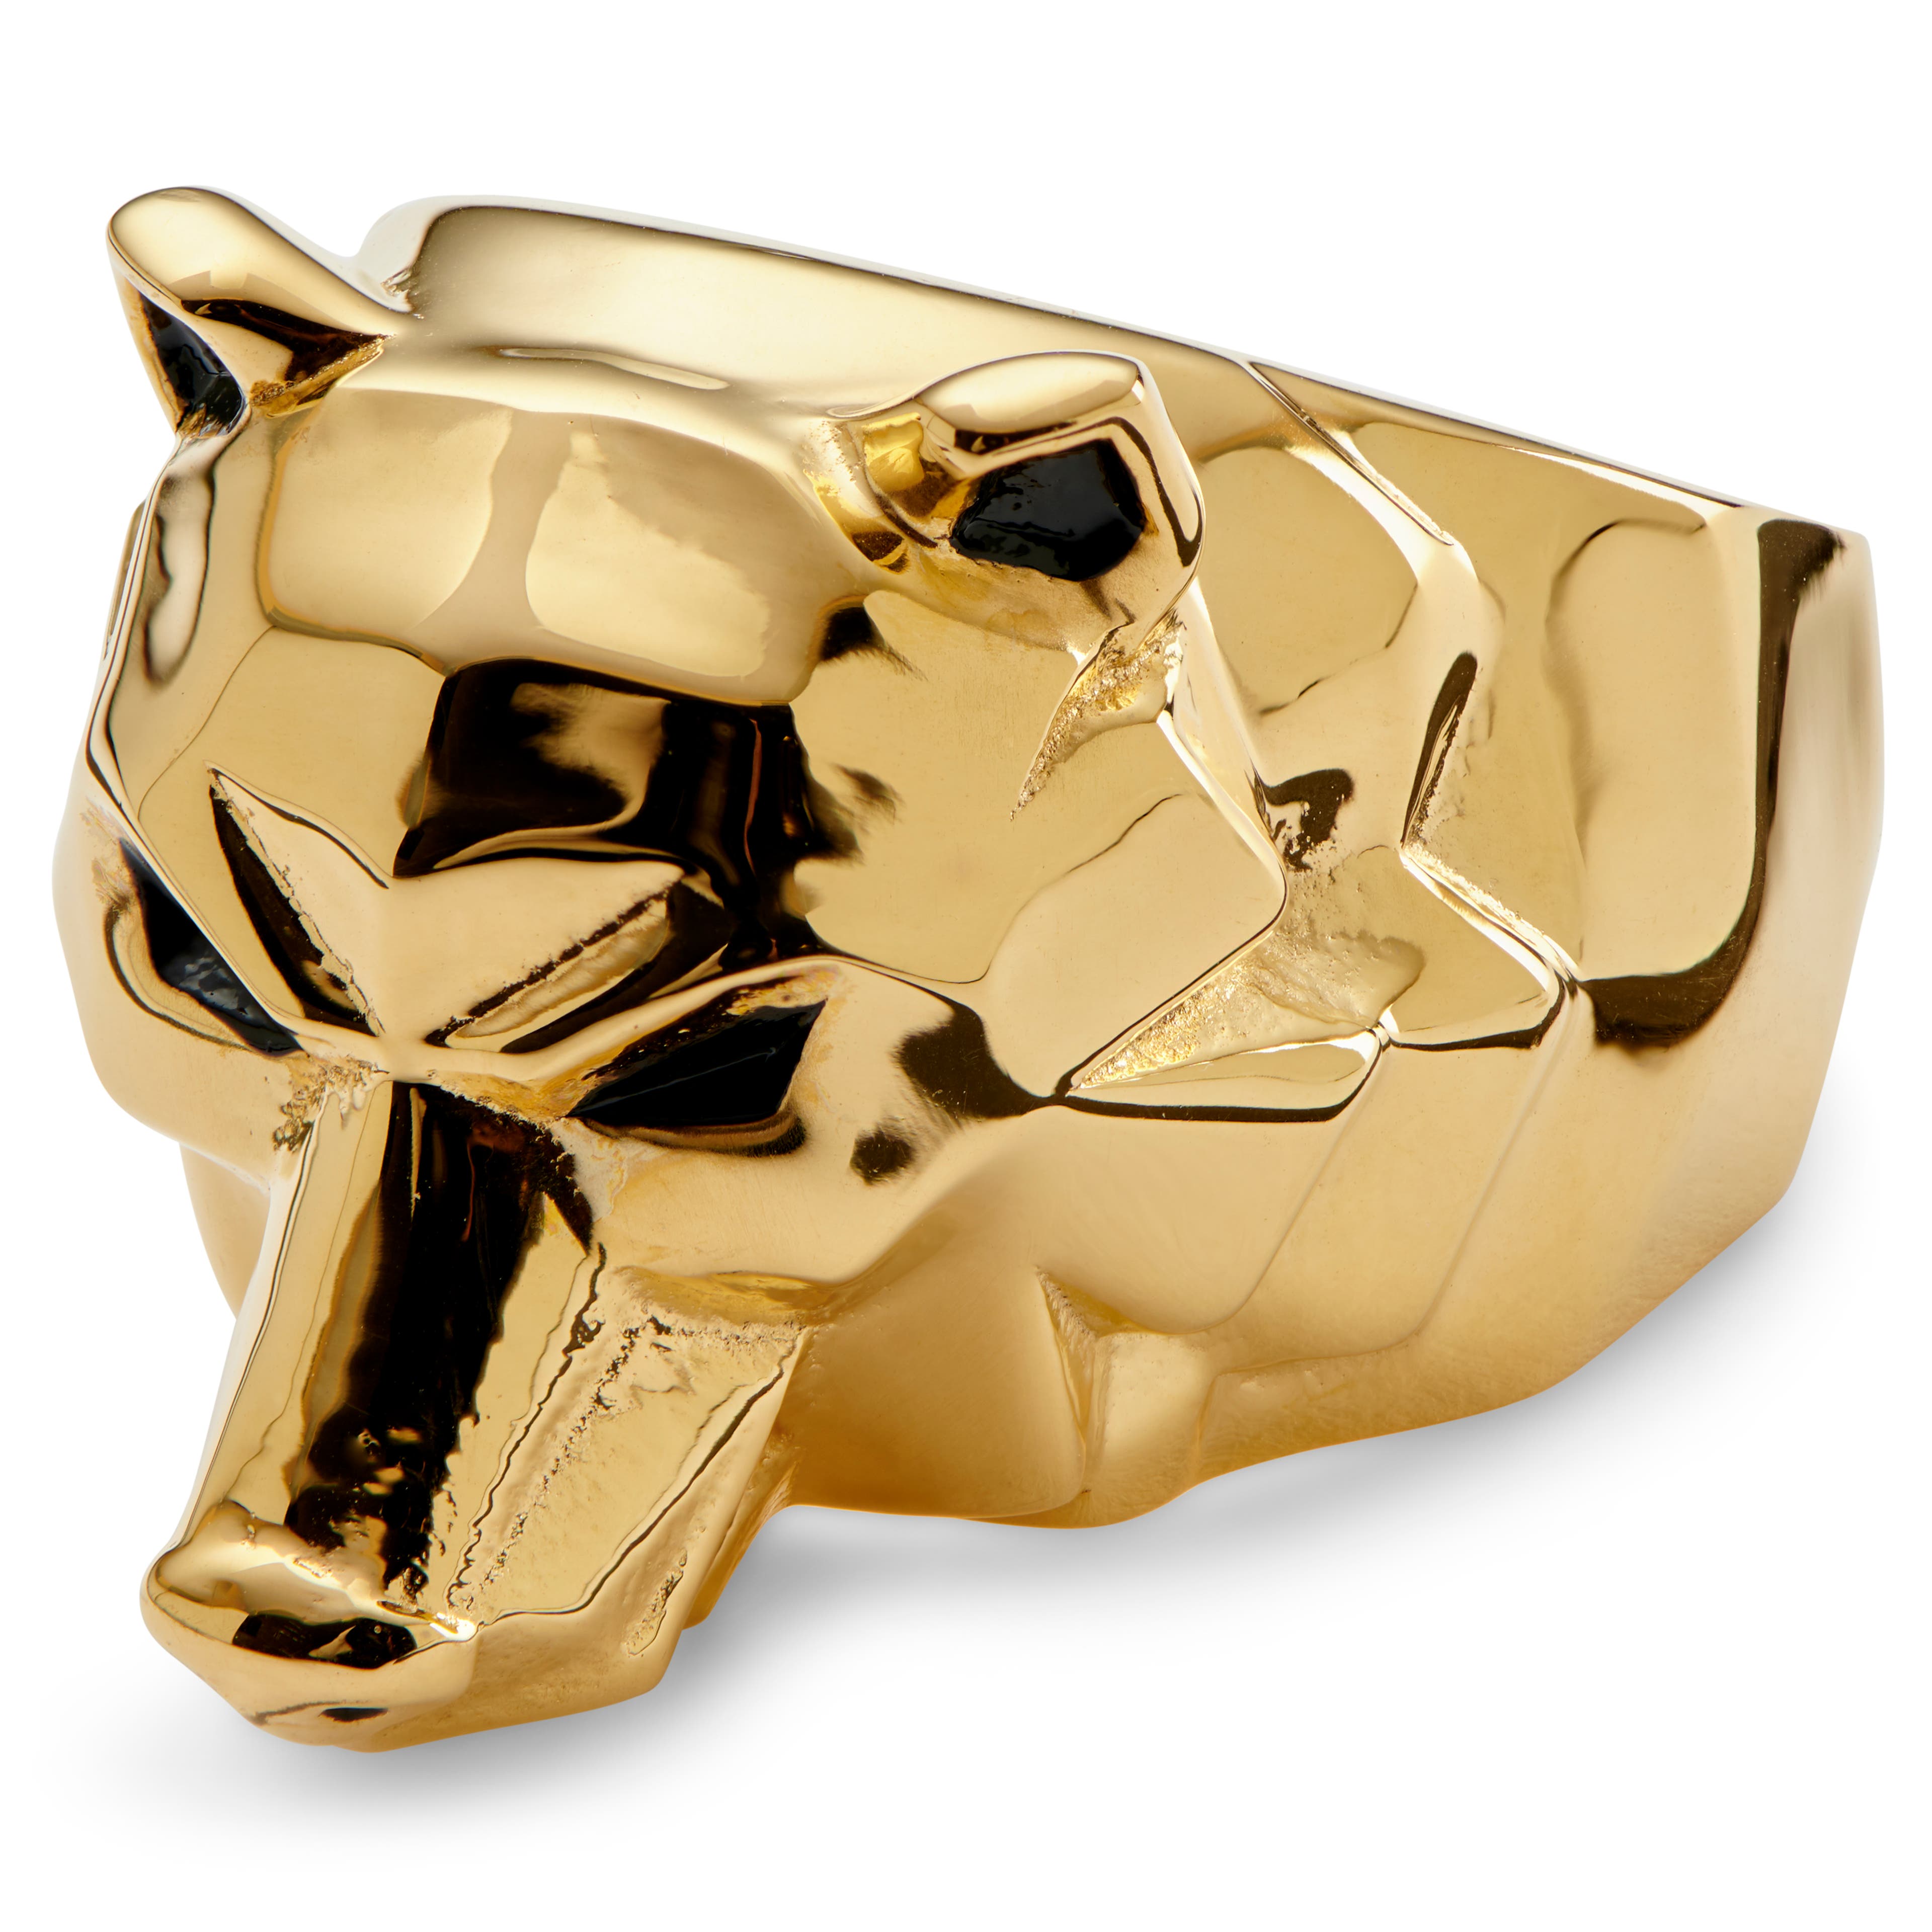 Mack aranyszínű medvefejes acél pecsétgyűrű